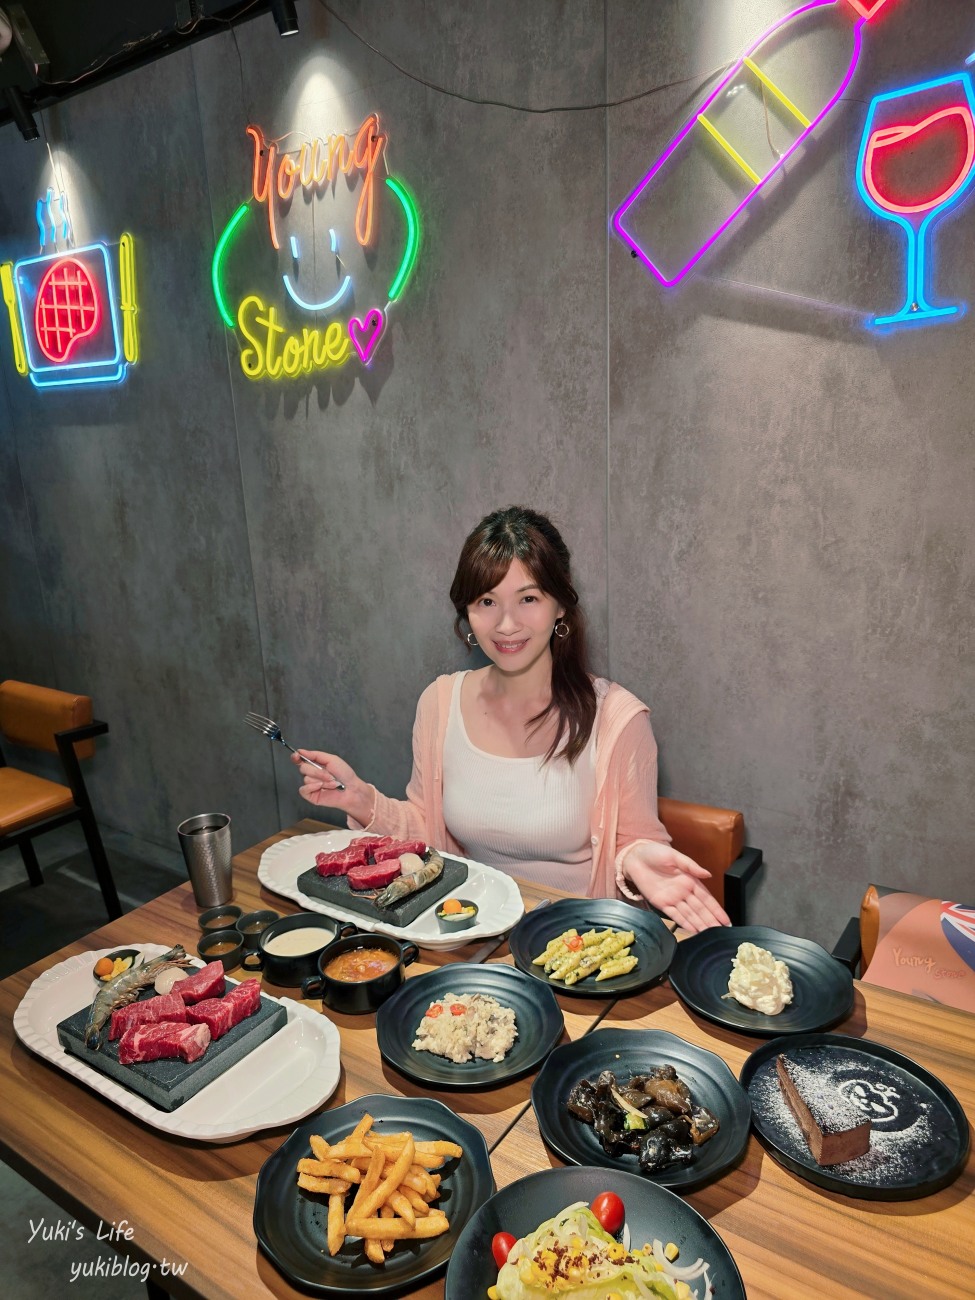 台北東區美食推薦|洋石岩燒牛排餐廳|自己當大廚~菜單.自助吧吃到飽 - yukiblog.tw